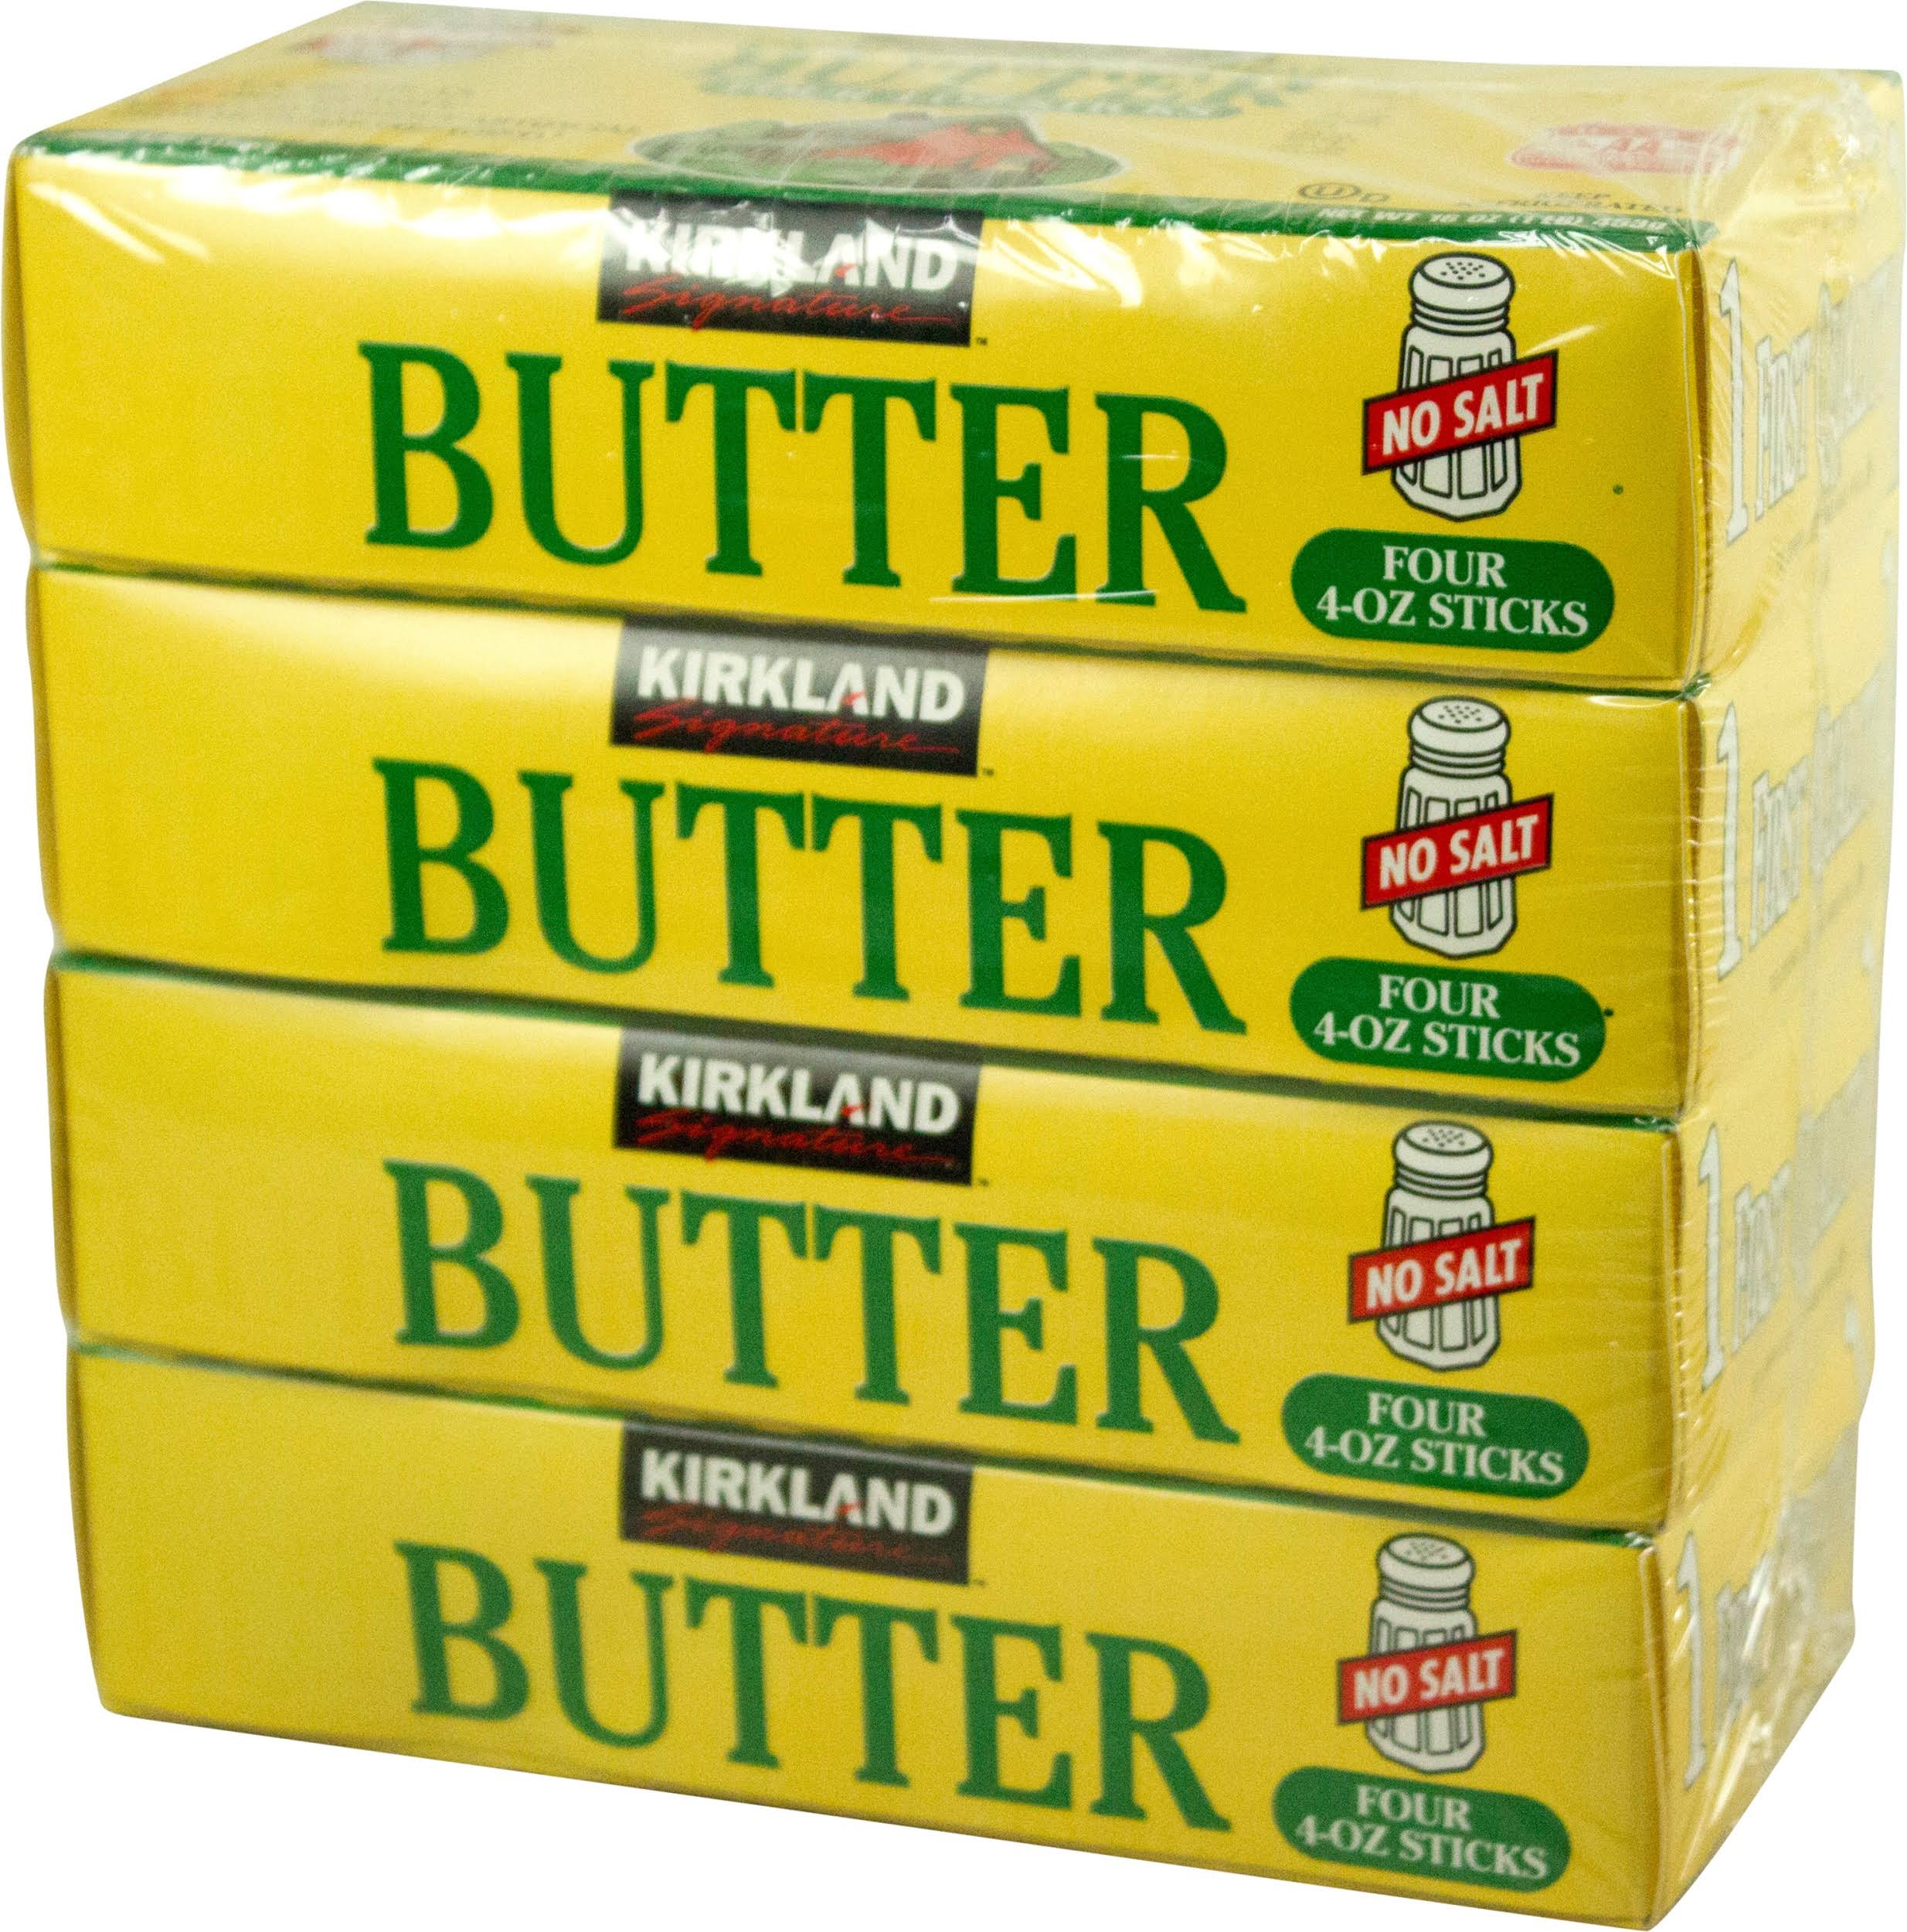 Kirkland Butter, Unsalted - 16 sticks, 4 oz each